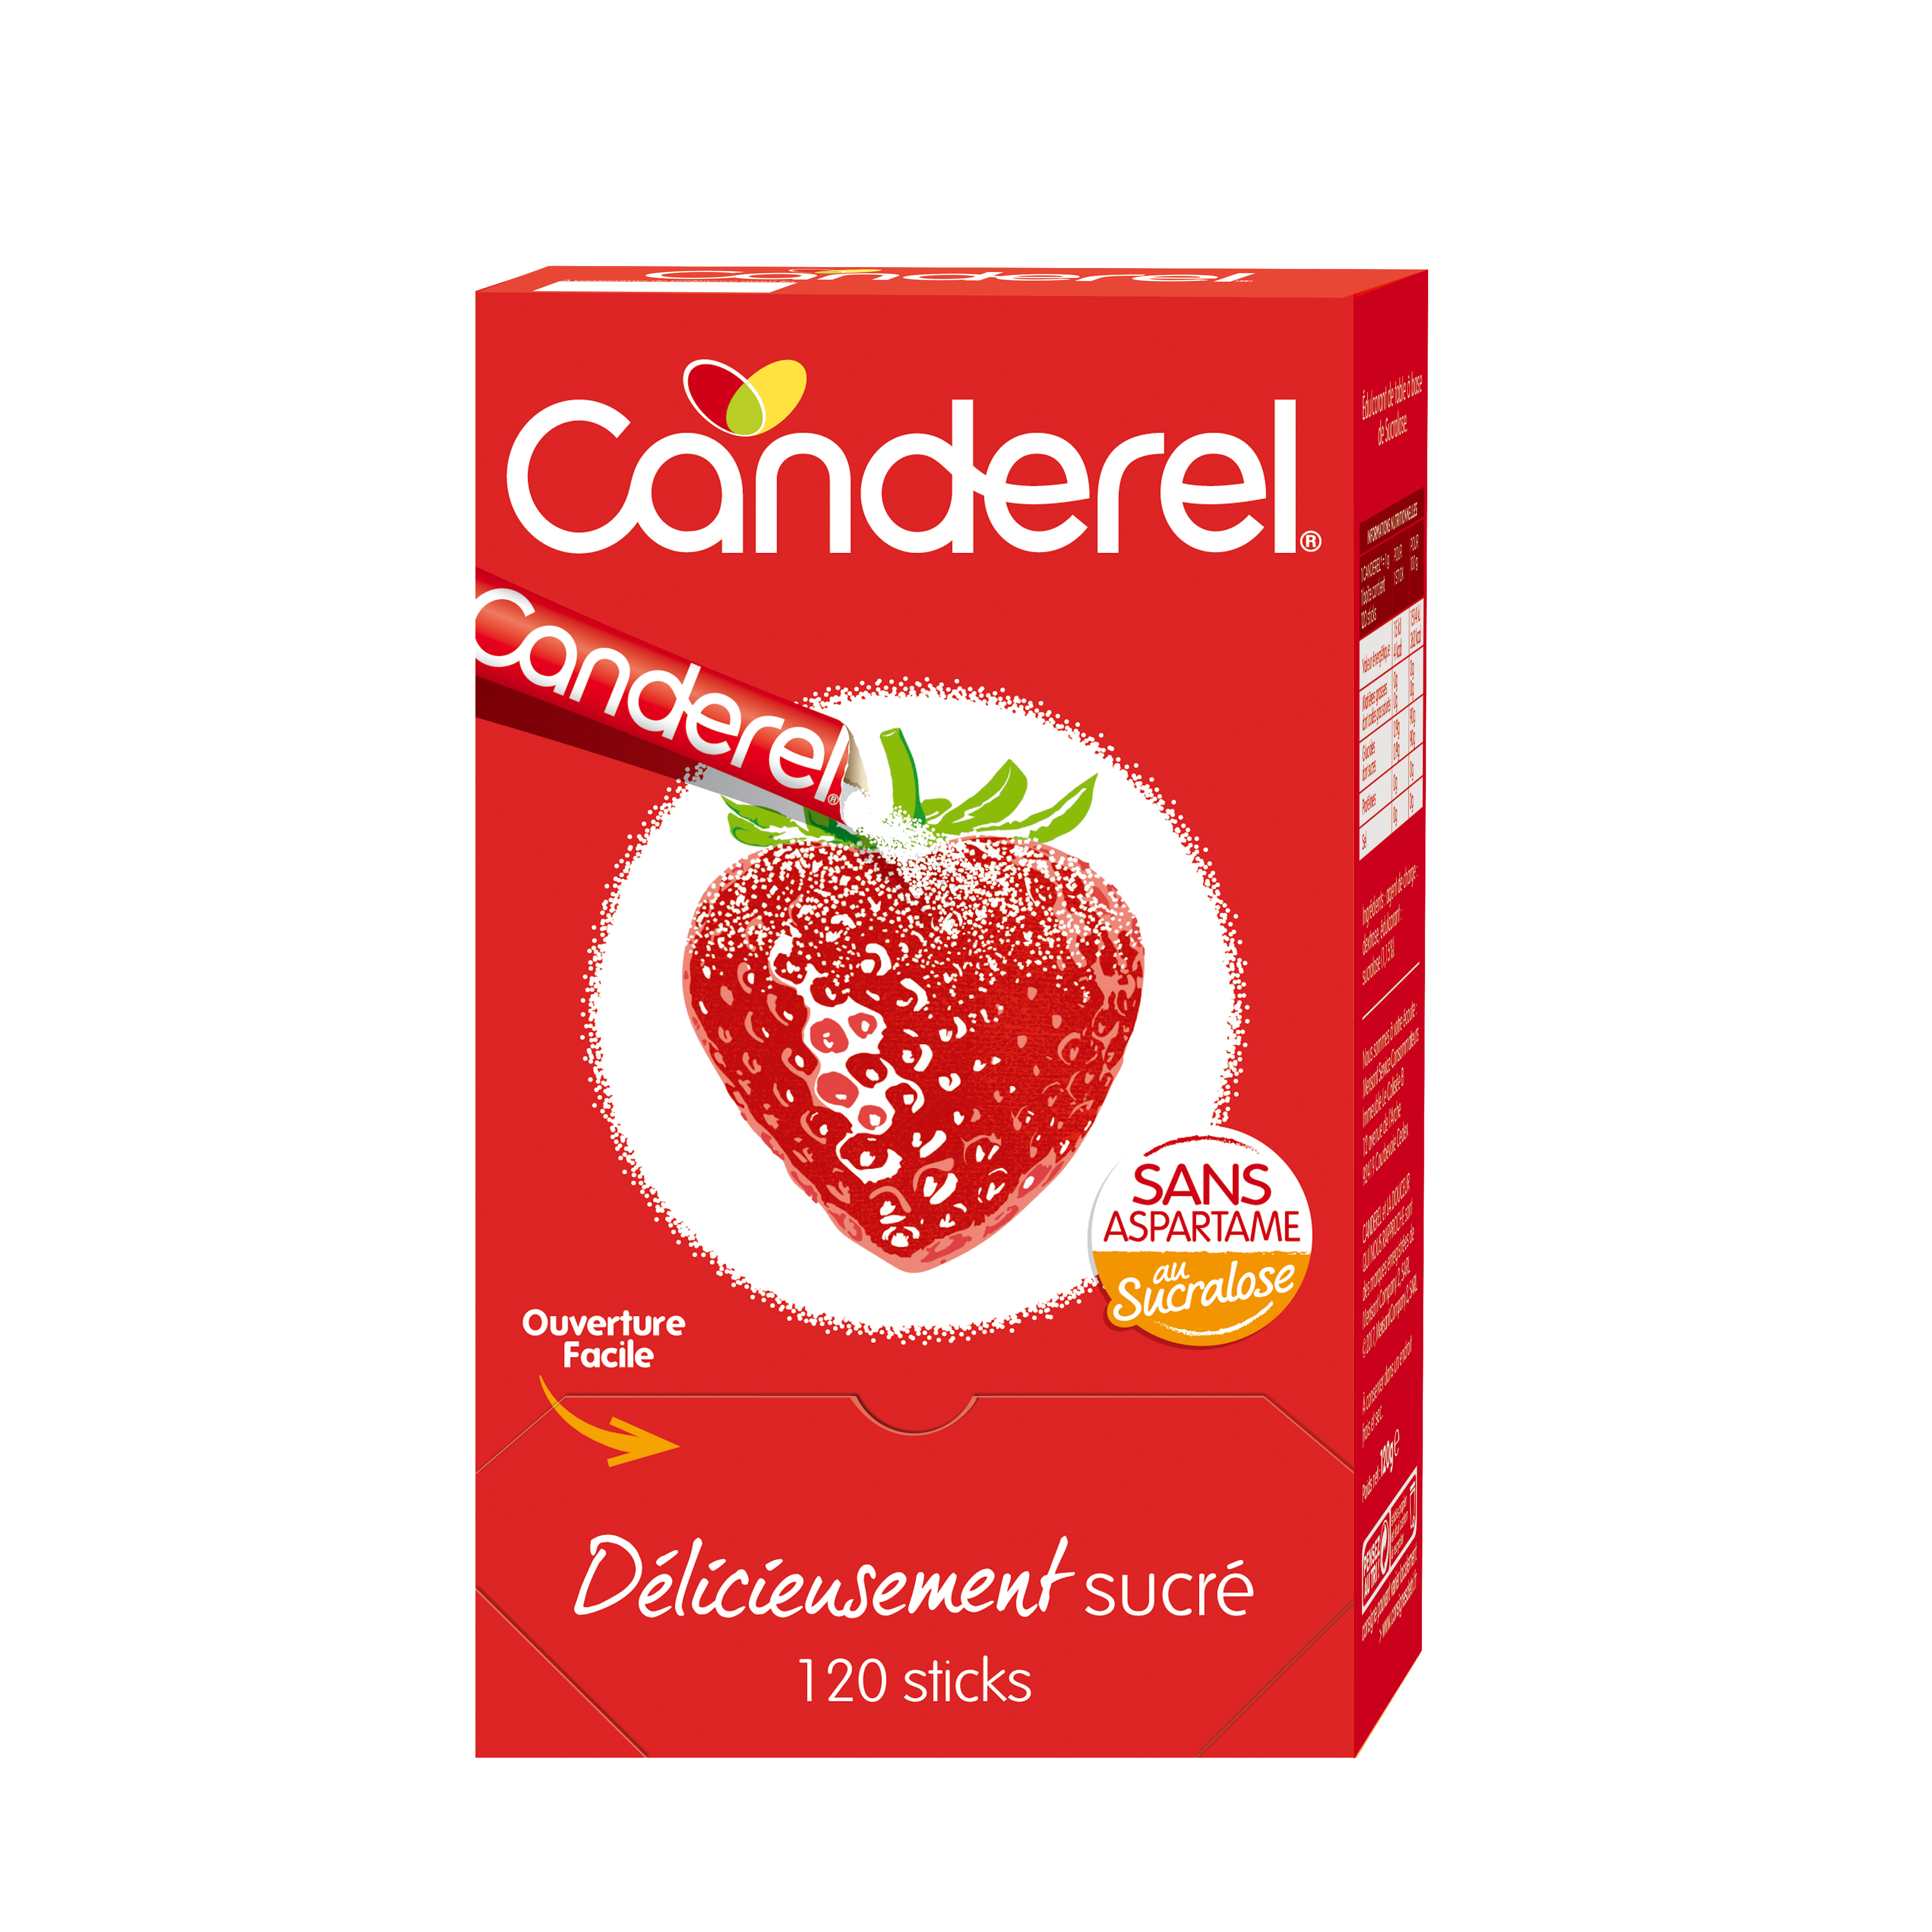 CANDEREL - Sugarly – Edulcorant – Poudre Cristallisée à base de